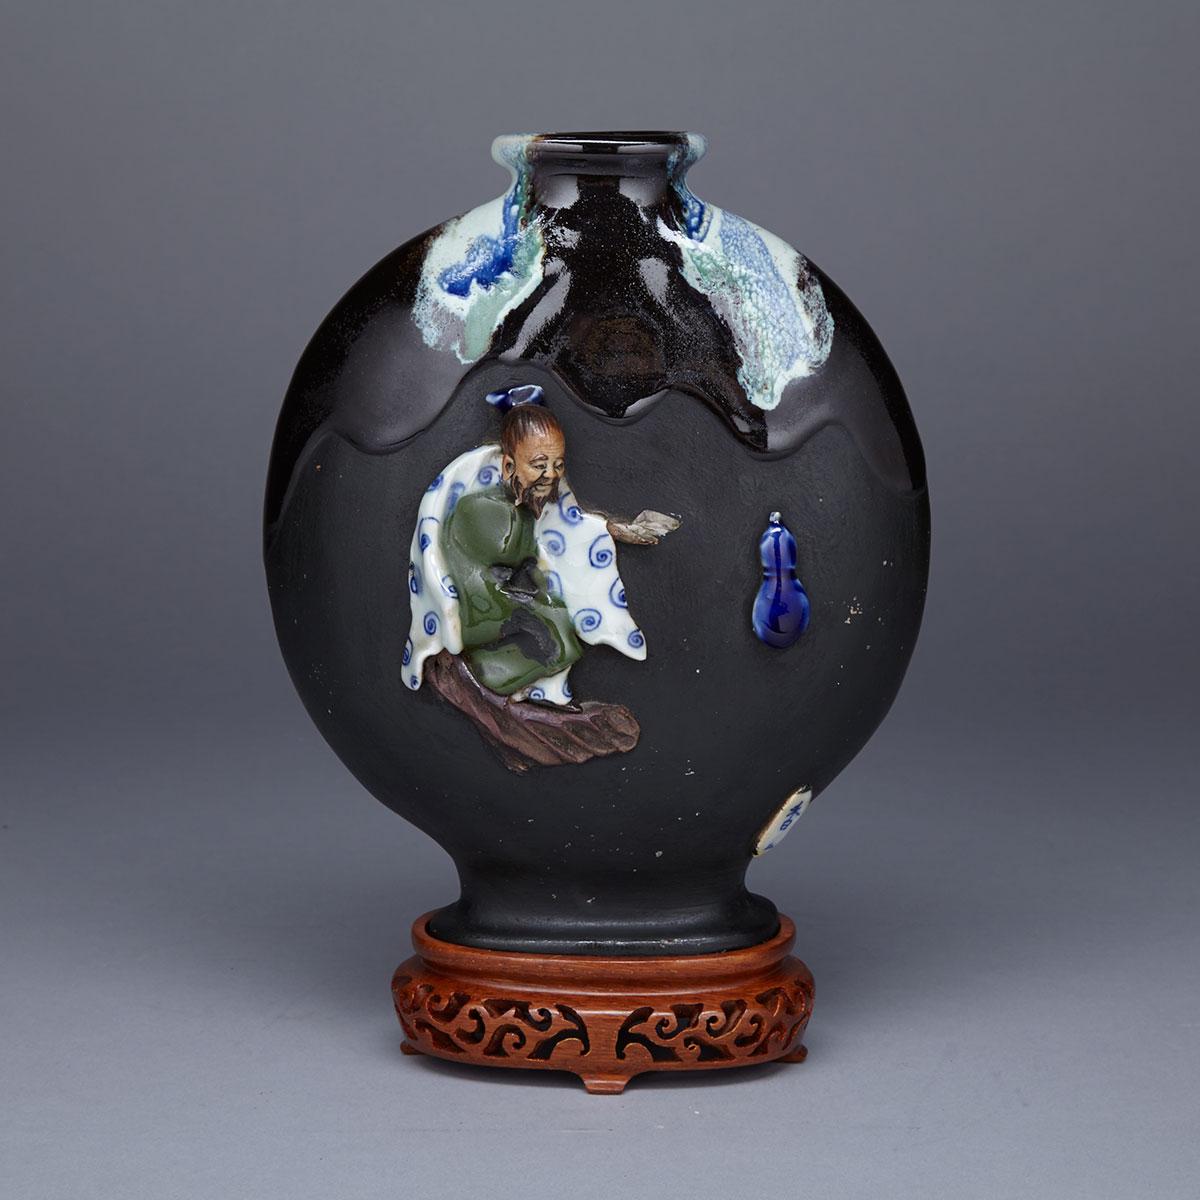 Sumidagawa Figural Flask, Signed Ban-Ni, Meiji Period, 19th Century